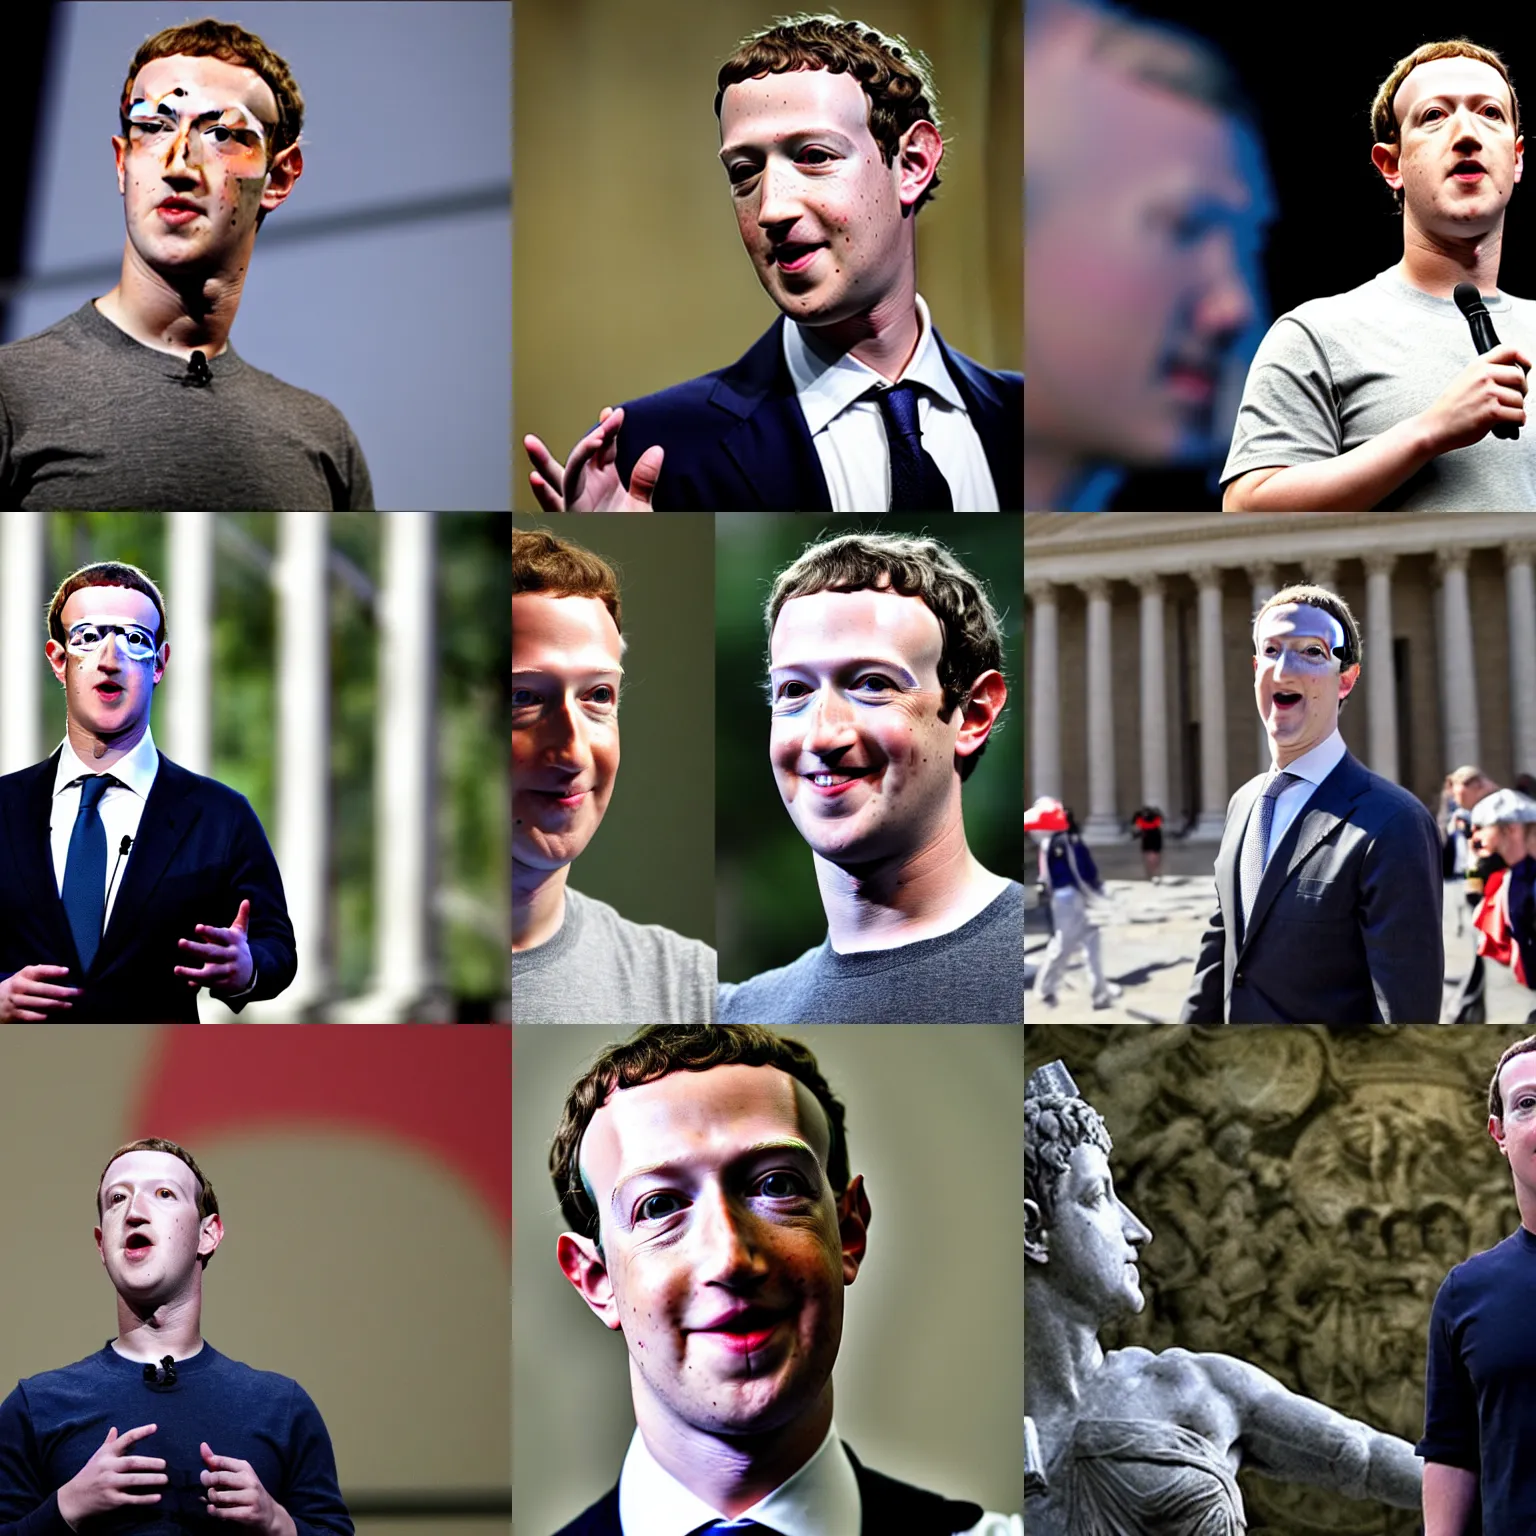 Prompt: Mark Zuckerberg is Caligula, Caesar